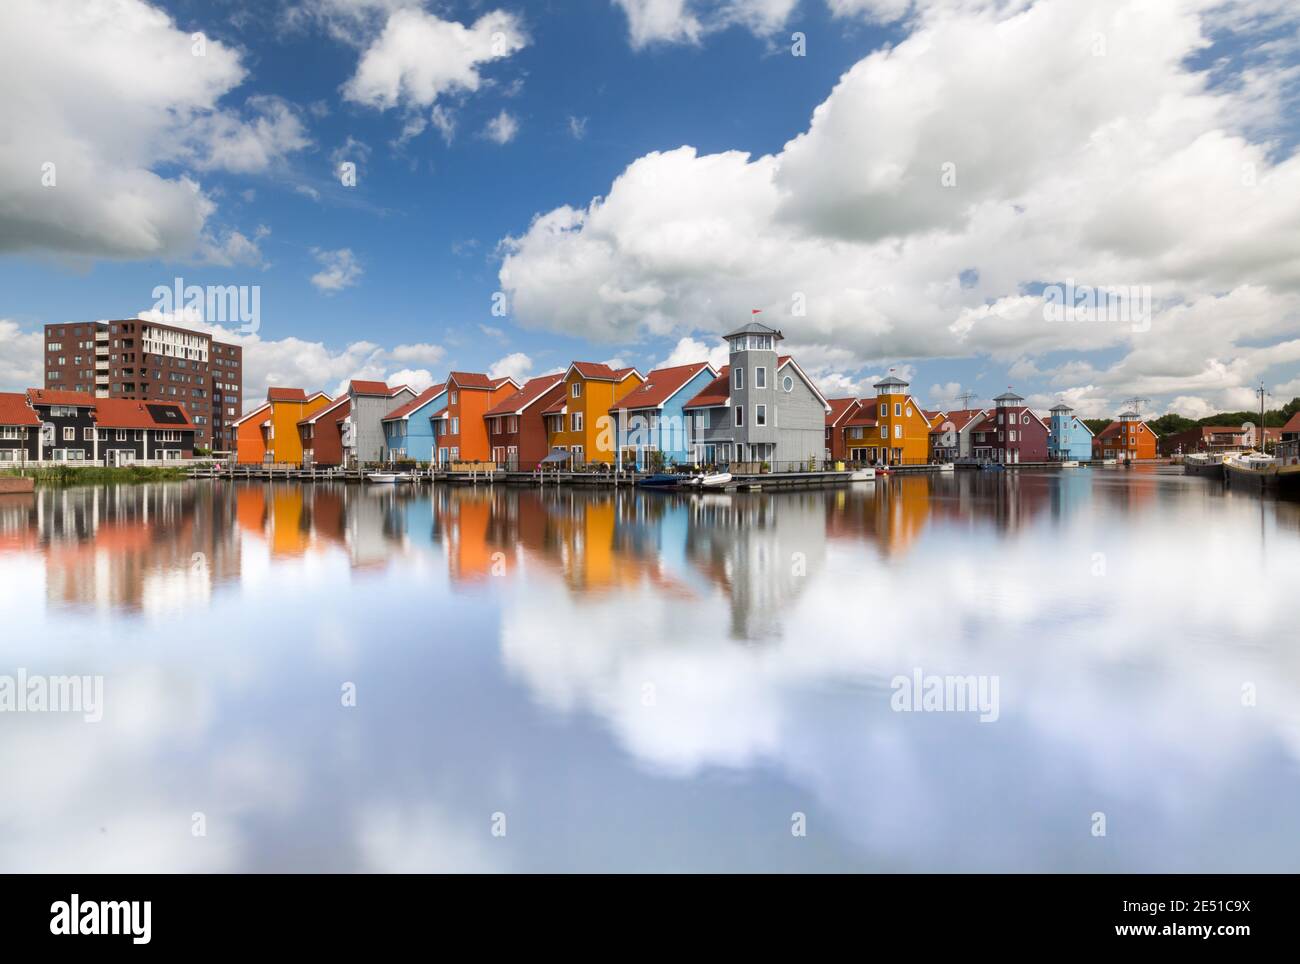 Vista simétrica de un amplio ángulo de un grupo de coloridas casas holandesas modernas frente al agua, bajo un cielo azul de verano con nubes hinchadas Foto de stock